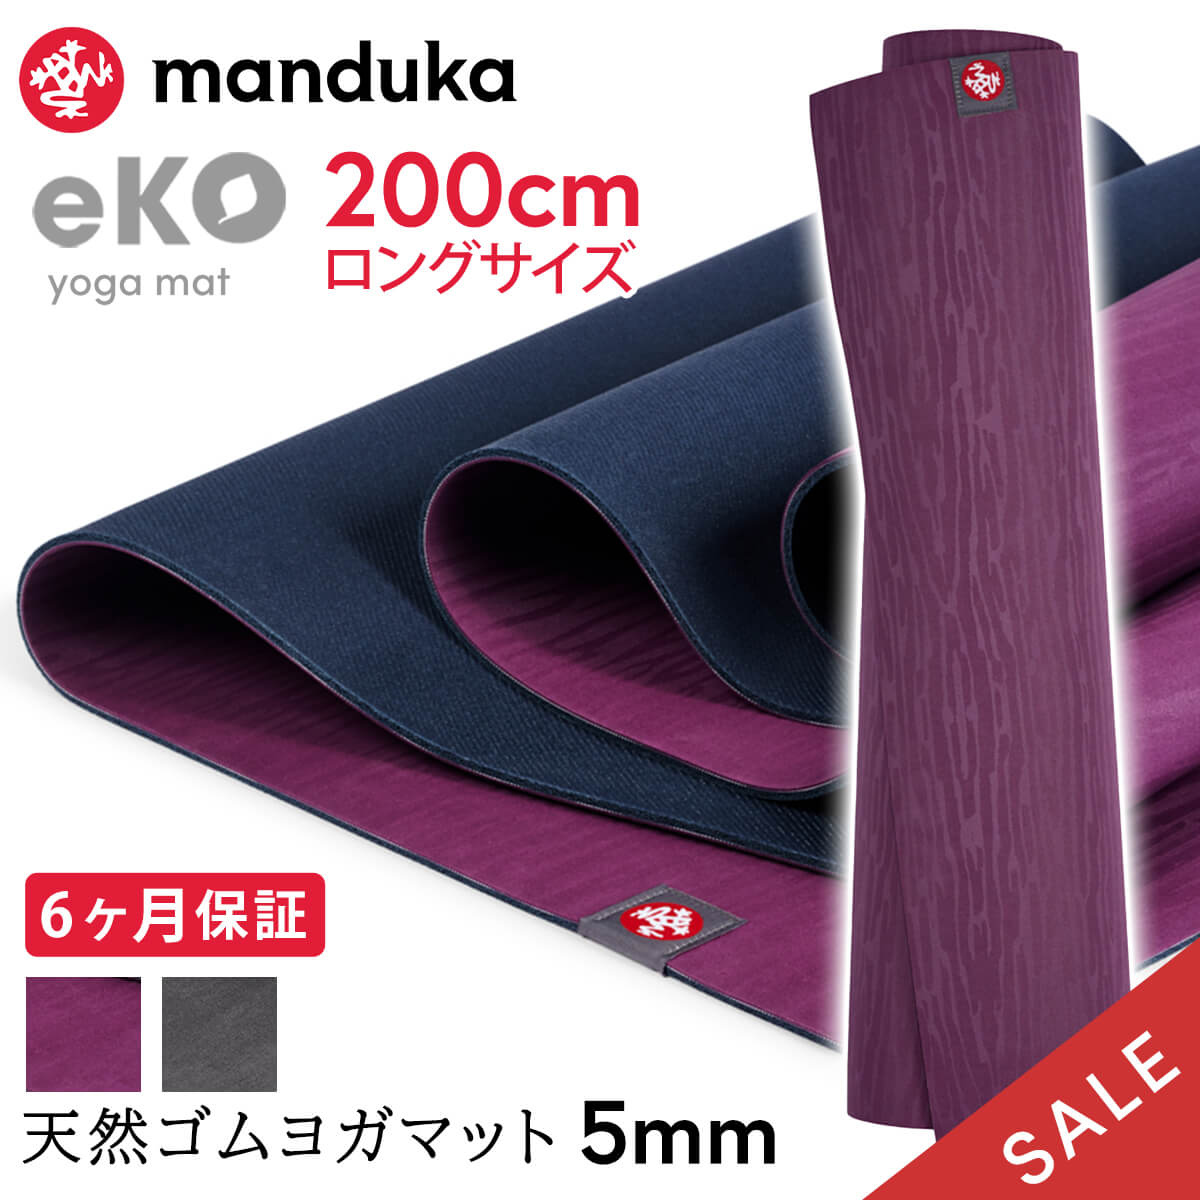 【SALE20 OFF】マンドゥカ Manduka ヨガマット エコ ロング(200cm／5mm)《6か月保証》 日本正規品 eKO yoga mat long 24SS トレーニング 天然ゴム 柄 ピラティス 大きい 厚手 フィットネス 滑らない 長い「MR」